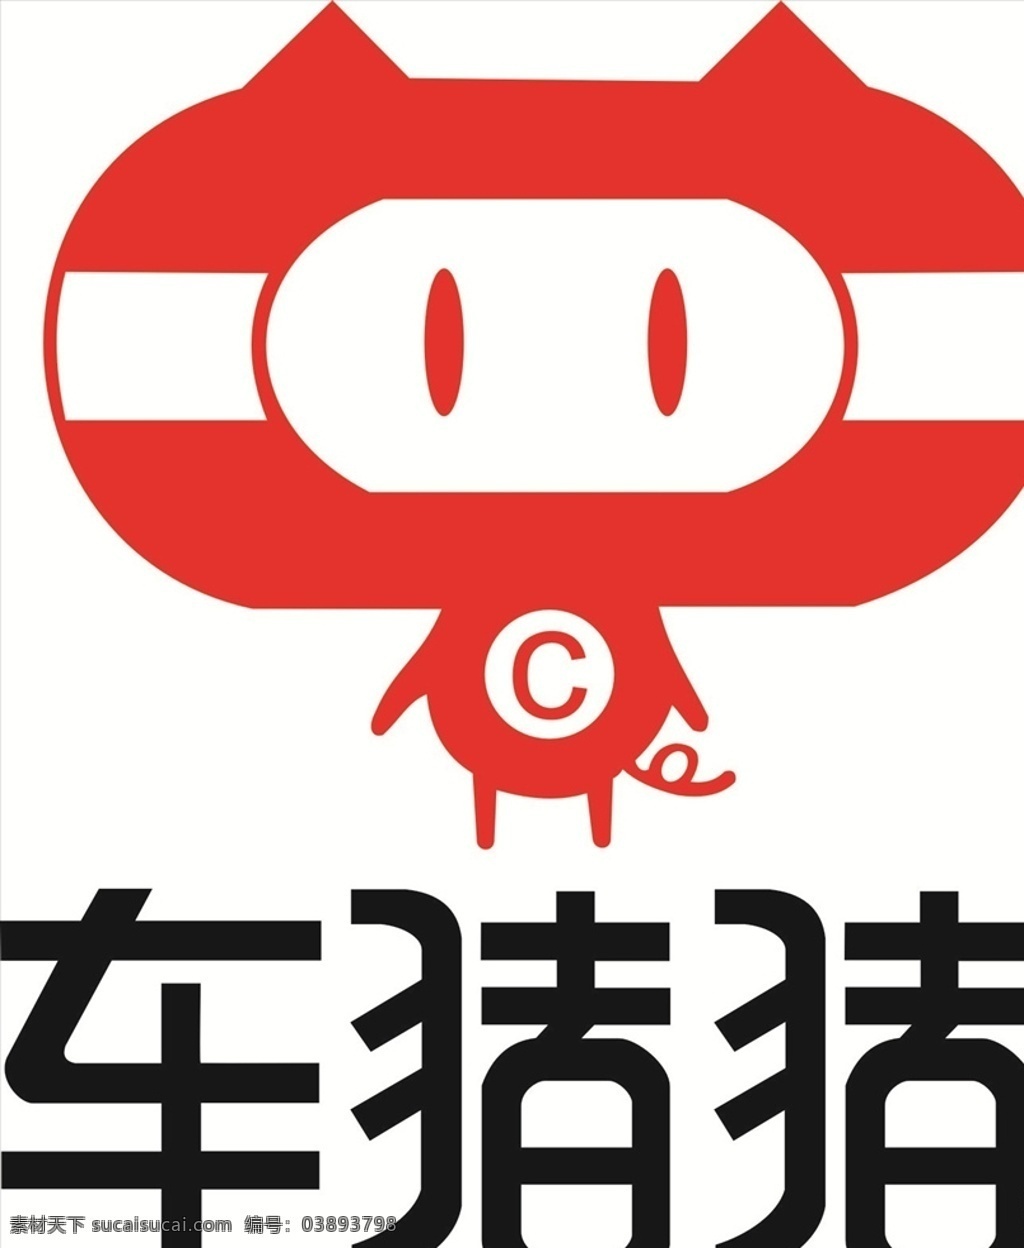 车 猪 logo 车猪猪 租车 网约车 汽车 logo设计